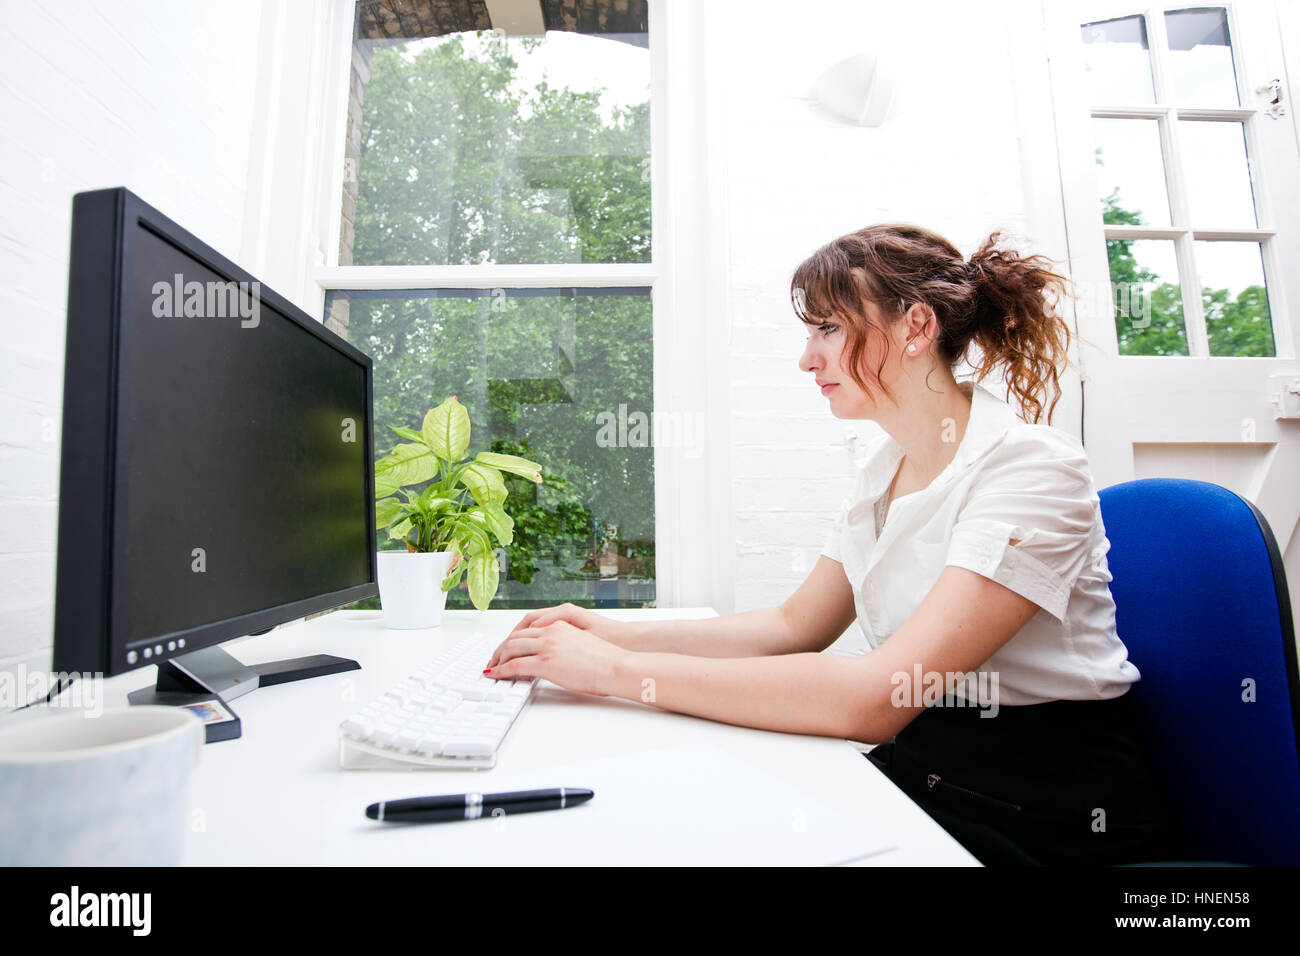 Vue latérale du young businesswoman using computer at desk Banque D'Images